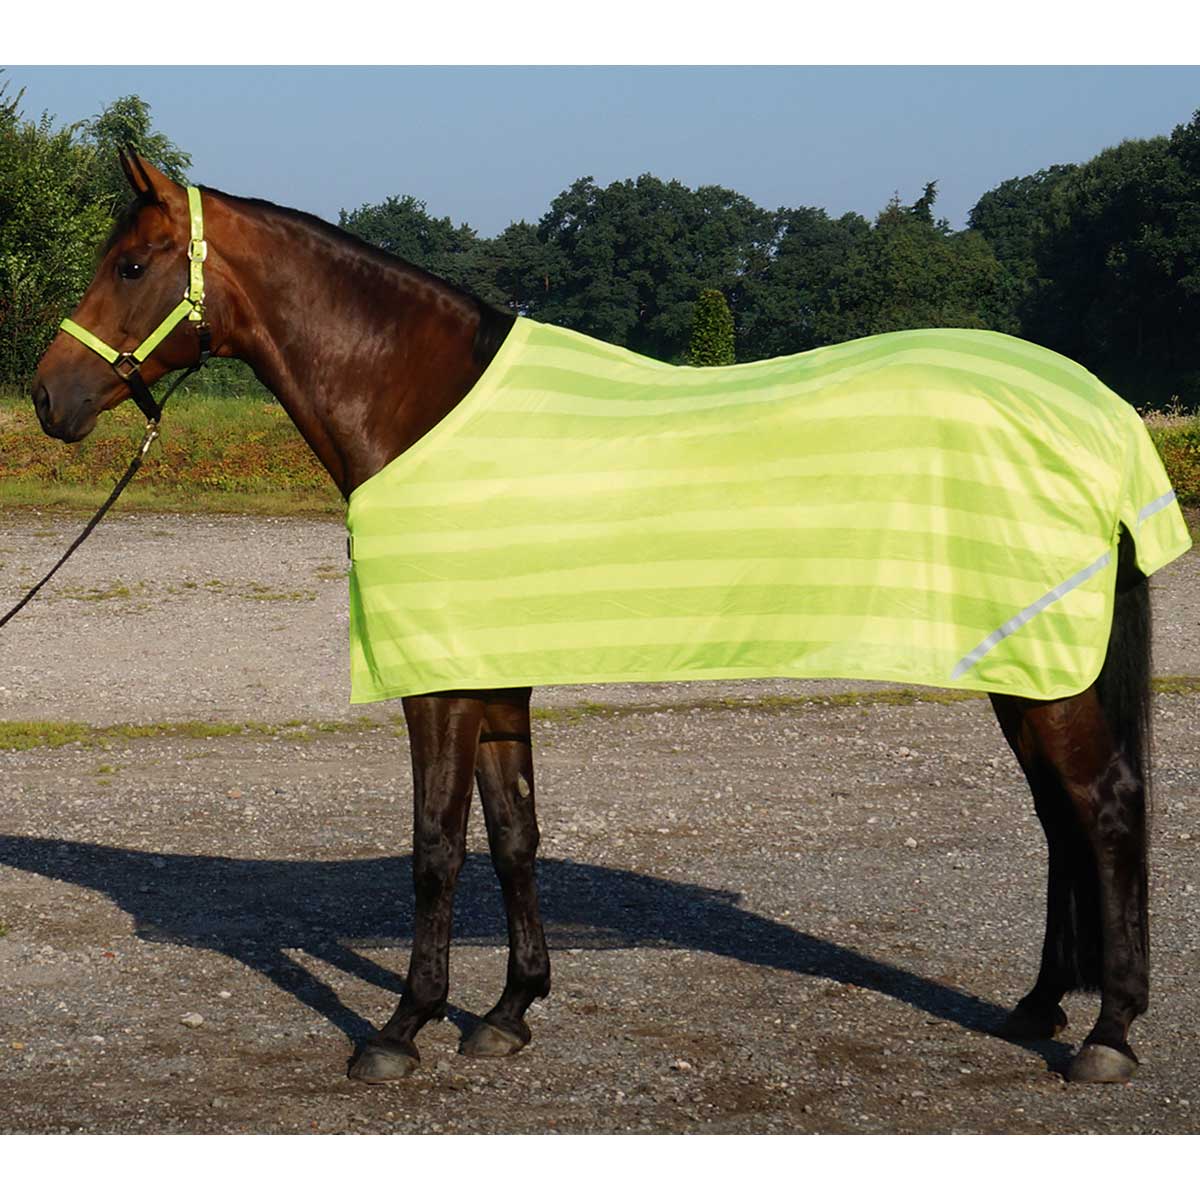 BUSSE REFLECTION pătură reflectorizantă pentru cai  155 cm